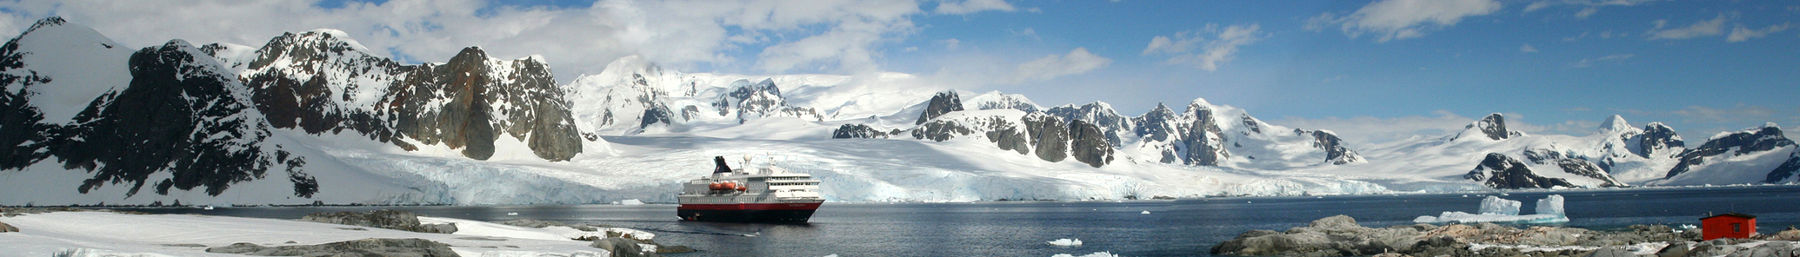 Antarctic Peninsula-banner.jpg